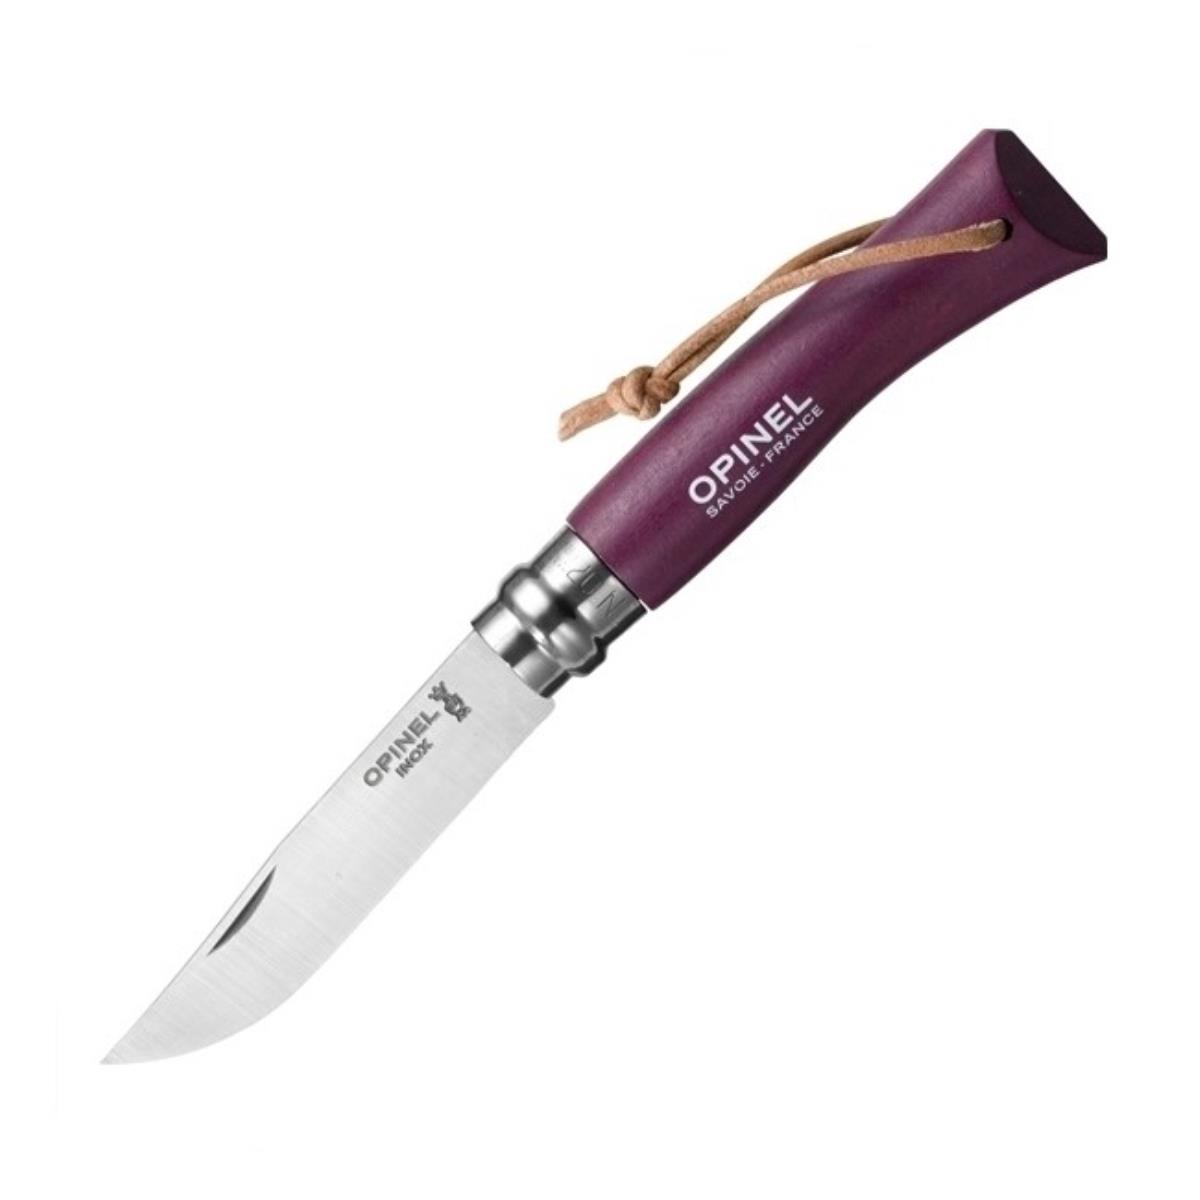 Нож №7 VRI Colored Tradition нерж. сталь, рукоять граб,  клинок 8см, темляк (слива) OPINEL доска разделочная для подачи с ручкой adelica 38×16×2 см темный граб